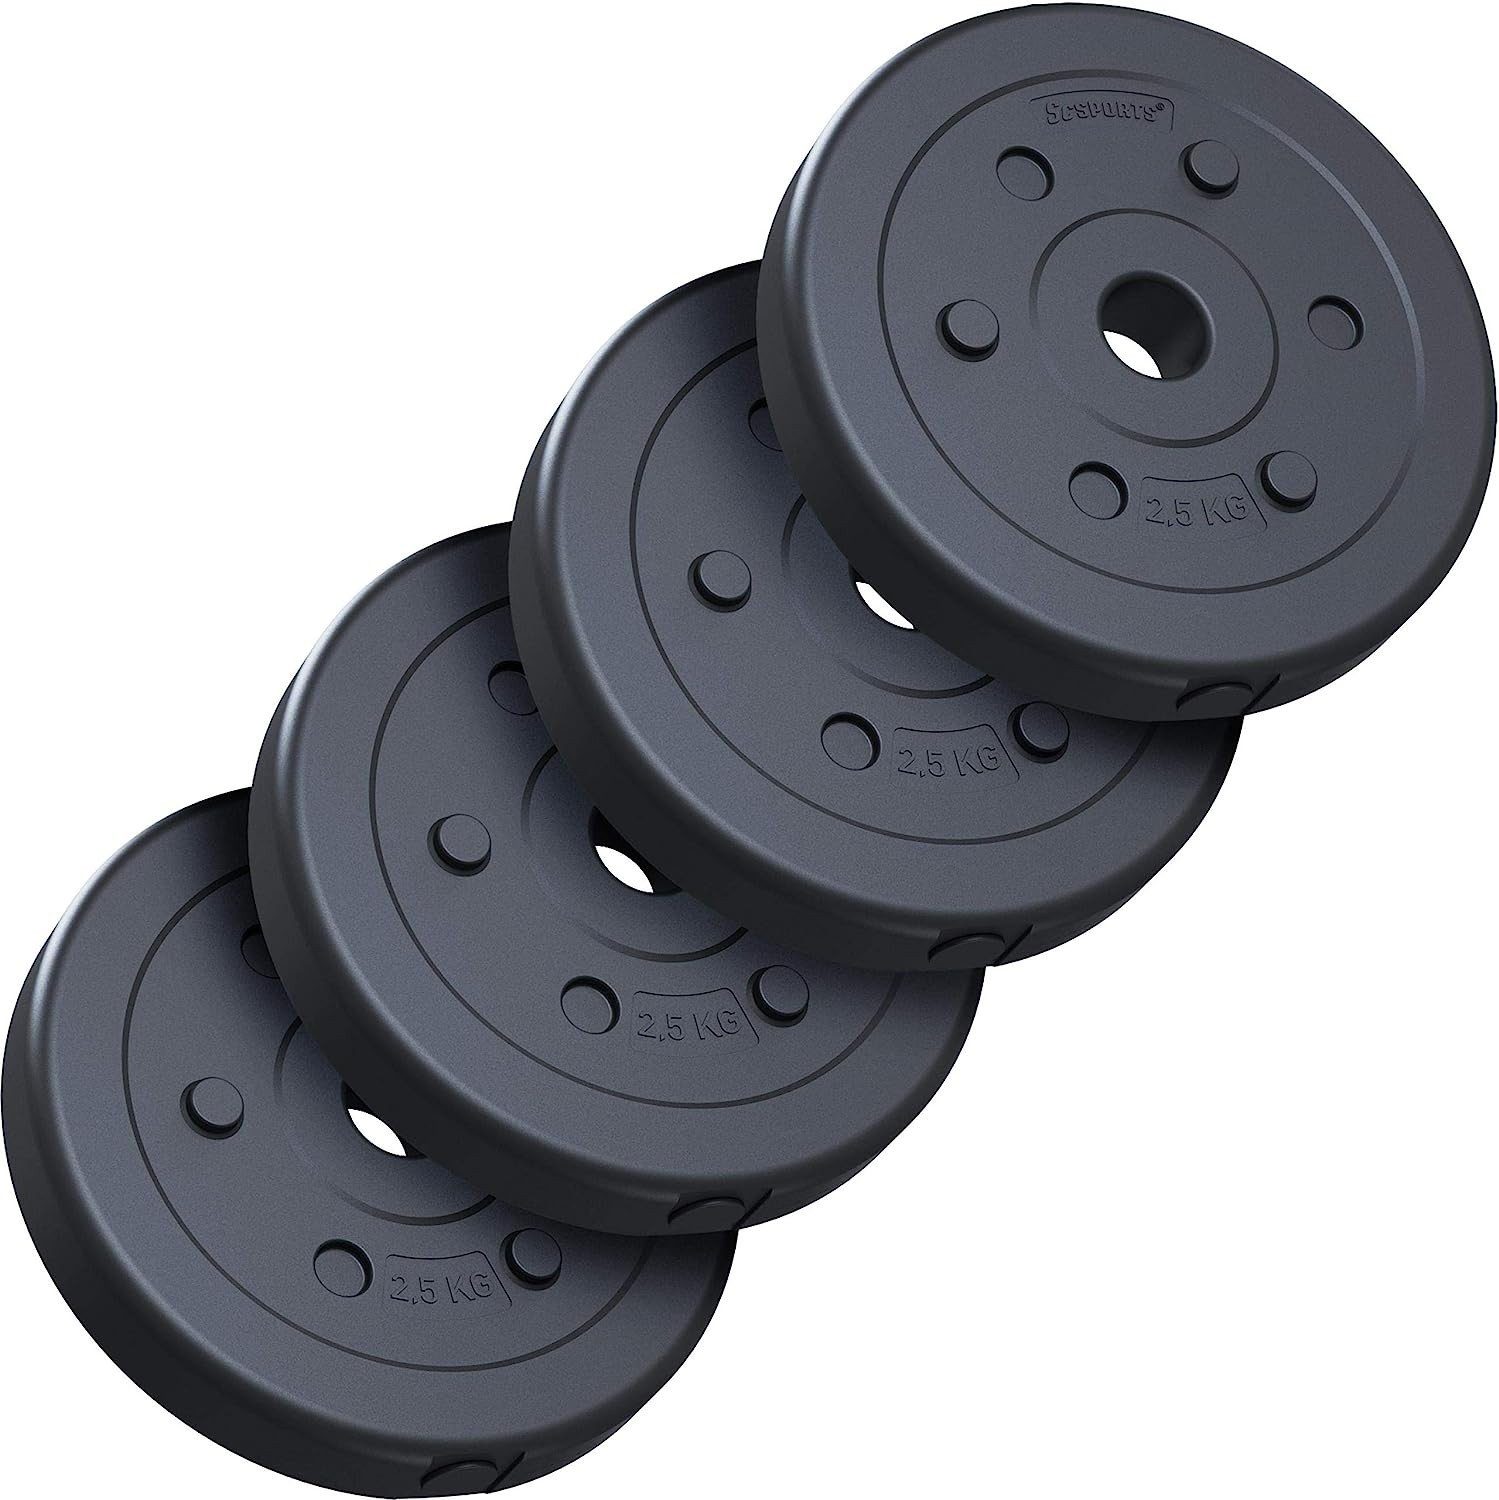 30/31mm 10 kg (10002974-tlg) Kunststoff Hantelscheiben Set ScSPORTS® Gewichtsscheiben Gewichte,